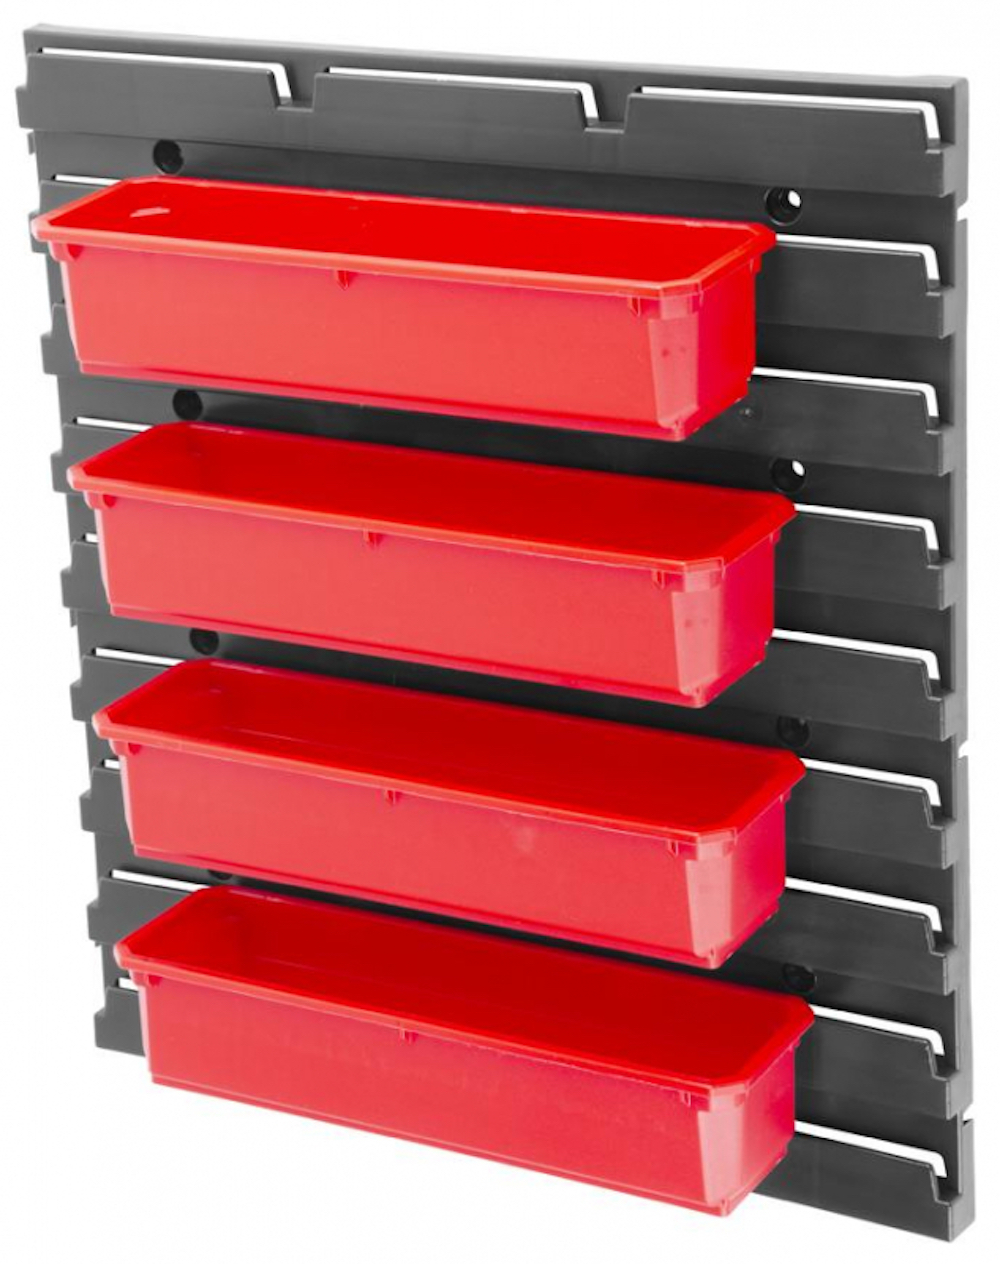 Tinker Kleinteilewandregal mit 4 Sortimentskästen schwarz/rot | HxBxT 60x40x43cm | Kleinteilemagazin, Kleinteileregal, Sortimentsschrank, Sichtboxenregal, Regalsystem